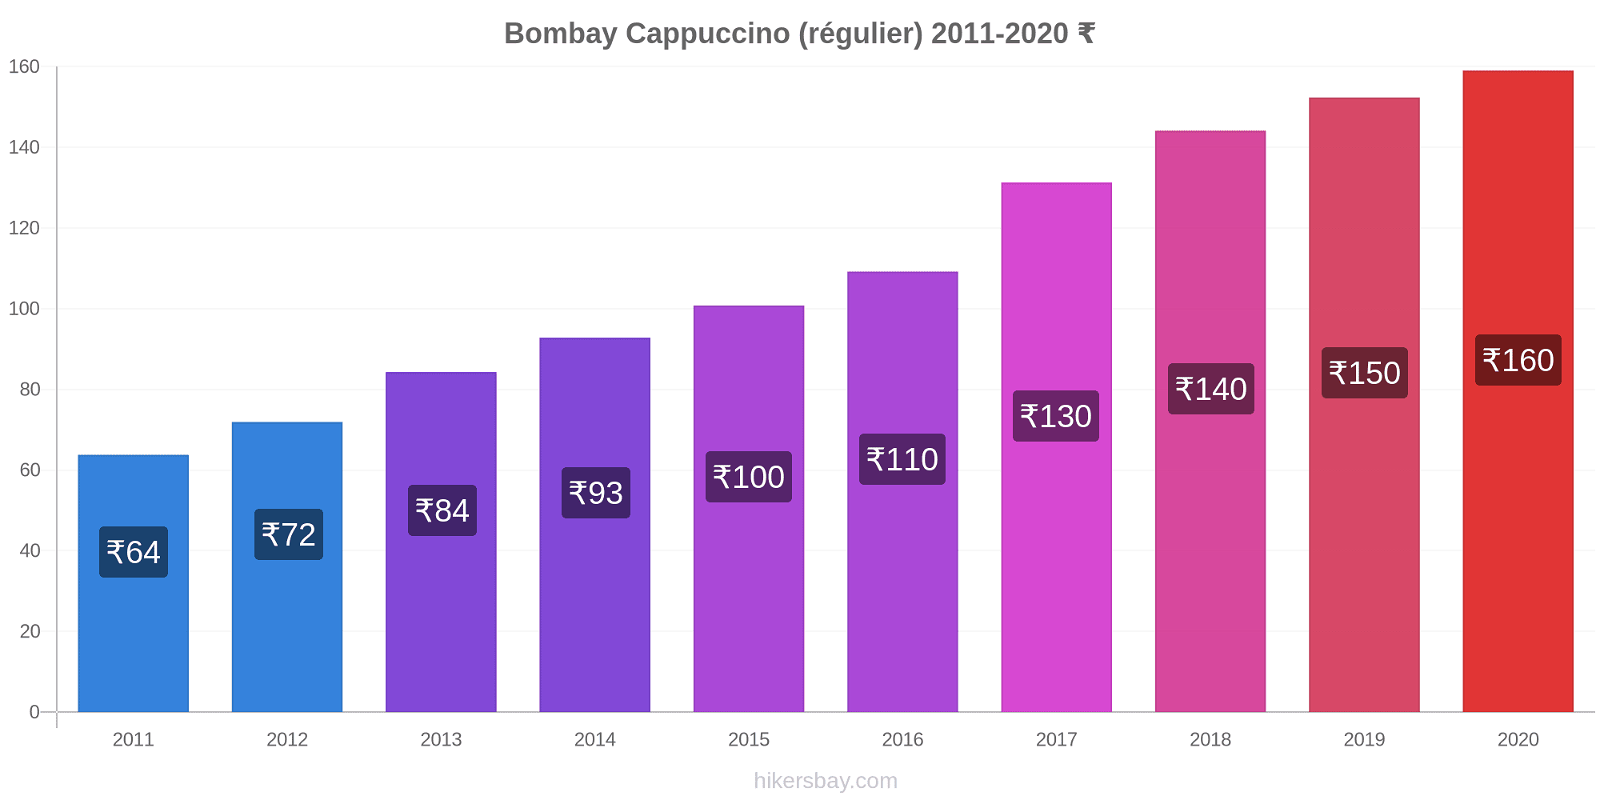 Bombay changements de prix Cappuccino (régulier) hikersbay.com